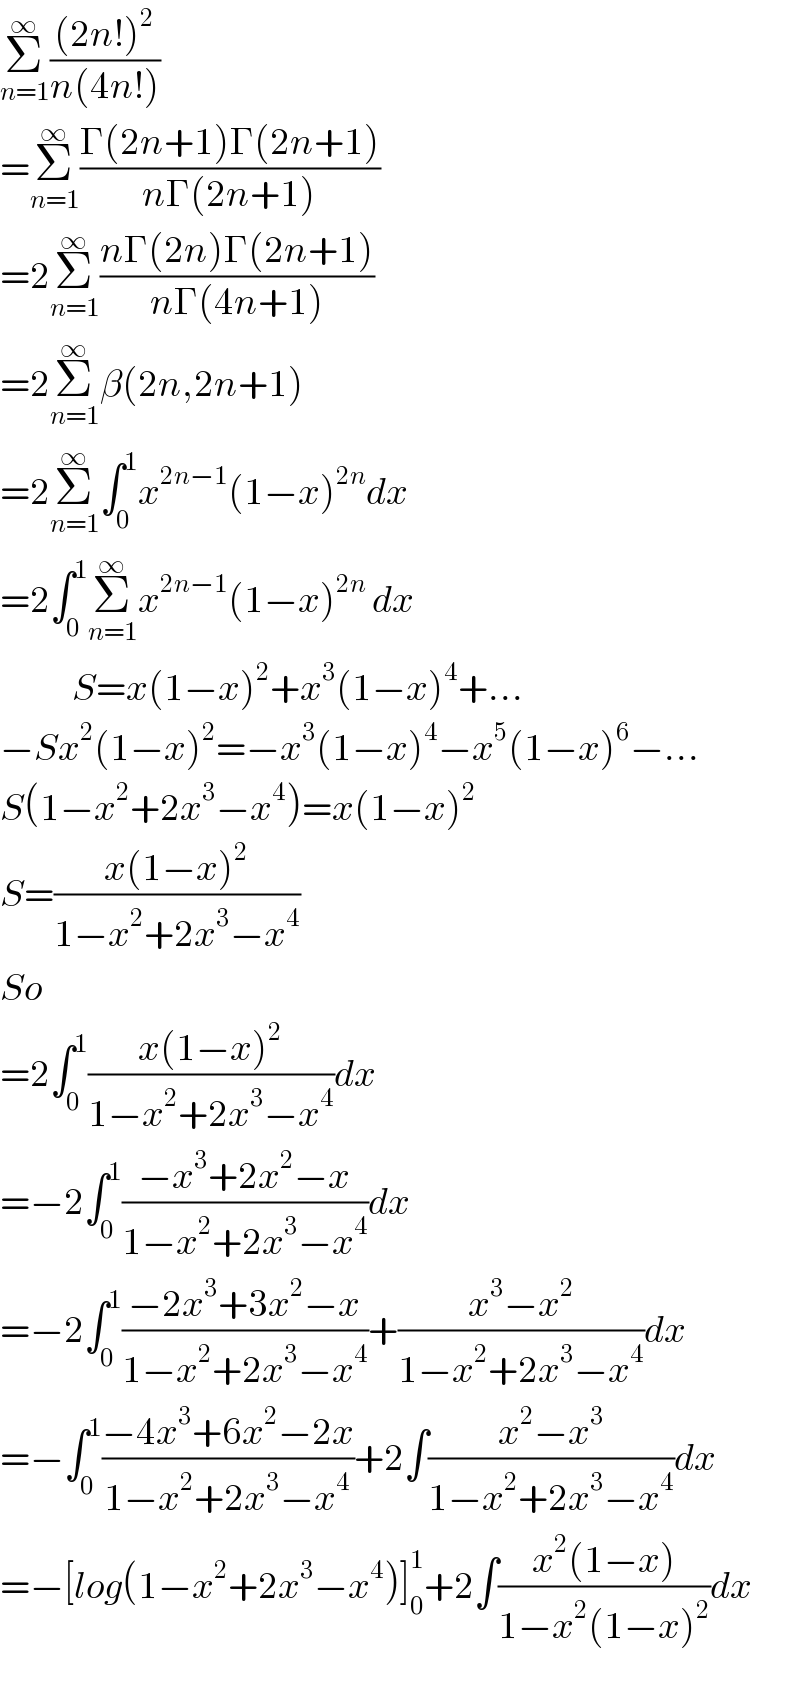 Σ_(n=1) ^∞ (((2n!)^2 )/(n(4n!)))  =Σ_(n=1) ^∞ ((Γ(2n+1)Γ(2n+1))/(nΓ(2n+1)))  =2Σ_(n=1) ^∞ ((nΓ(2n)Γ(2n+1))/(nΓ(4n+1)))  =2Σ_(n=1) ^∞ β(2n,2n+1)  =2Σ_(n=1) ^∞ ∫_0 ^1 x^(2n−1) (1−x)^(2n) dx  =2∫_0 ^1 Σ_(n=1) ^∞ x^(2n−1) (1−x)^(2n)  dx              S=x(1−x)^2 +x^3 (1−x)^4 +...  −Sx^2 (1−x)^2 =−x^3 (1−x)^4 −x^5 (1−x)^6 −...  S(1−x^2 +2x^3 −x^4 )=x(1−x)^2   S=((x(1−x)^2 )/(1−x^2 +2x^3 −x^4 ))  So  =2∫_0 ^1 ((x(1−x)^2 )/(1−x^2 +2x^3 −x^4 ))dx  =−2∫_0 ^1 ((−x^3 +2x^2 −x)/(1−x^2 +2x^3 −x^4 ))dx  =−2∫_0 ^1 ((−2x^3 +3x^2 −x)/(1−x^2 +2x^3 −x^4 ))+((x^3 −x^2 )/(1−x^2 +2x^3 −x^4 ))dx  =−∫_0 ^1 ((−4x^3 +6x^2 −2x)/(1−x^2 +2x^3 −x^4 ))+2∫((x^2 −x^3 )/(1−x^2 +2x^3 −x^4 ))dx  =−[log(1−x^2 +2x^3 −x^4 )]_0 ^1 +2∫((x^2 (1−x))/(1−x^2 (1−x)^2 ))dx  